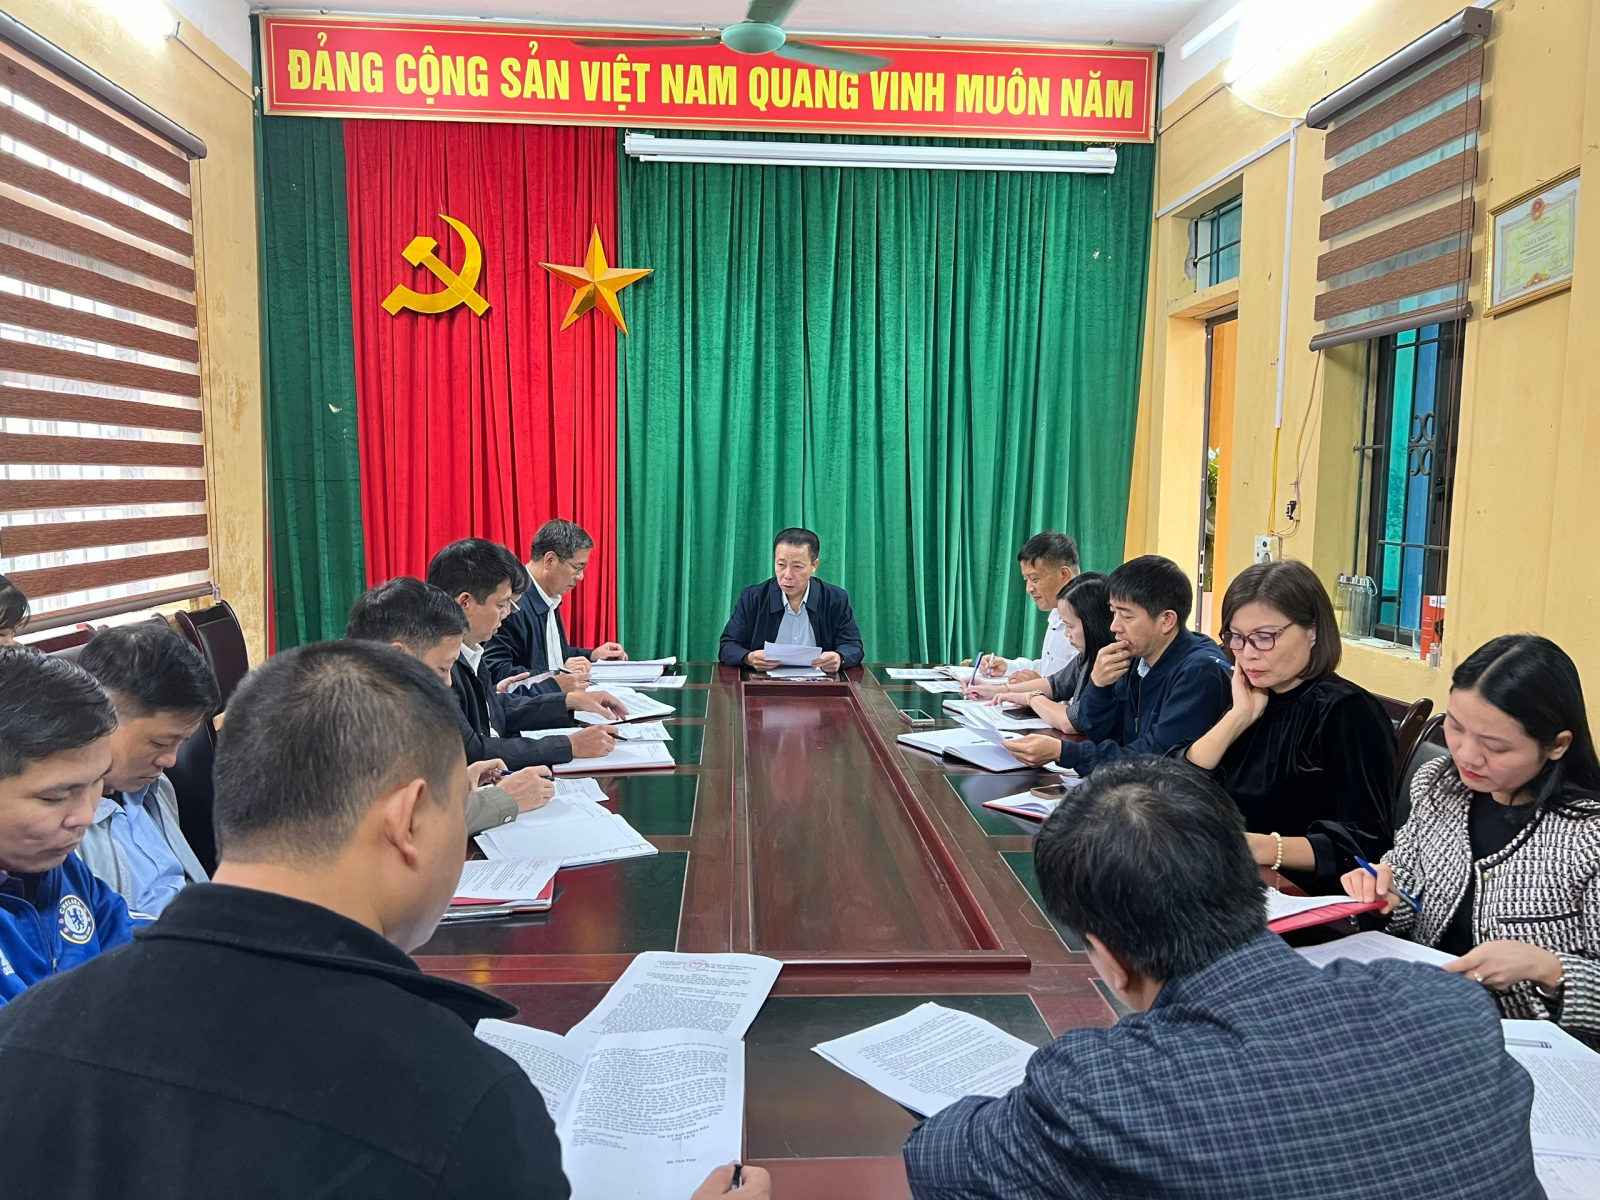 Đồng chí Phó Chủ tịch UBND thành phố - Bùi Tuấn Anh  làm việc với Ban Thường vụ Đảng ủy xã Tân Hưng